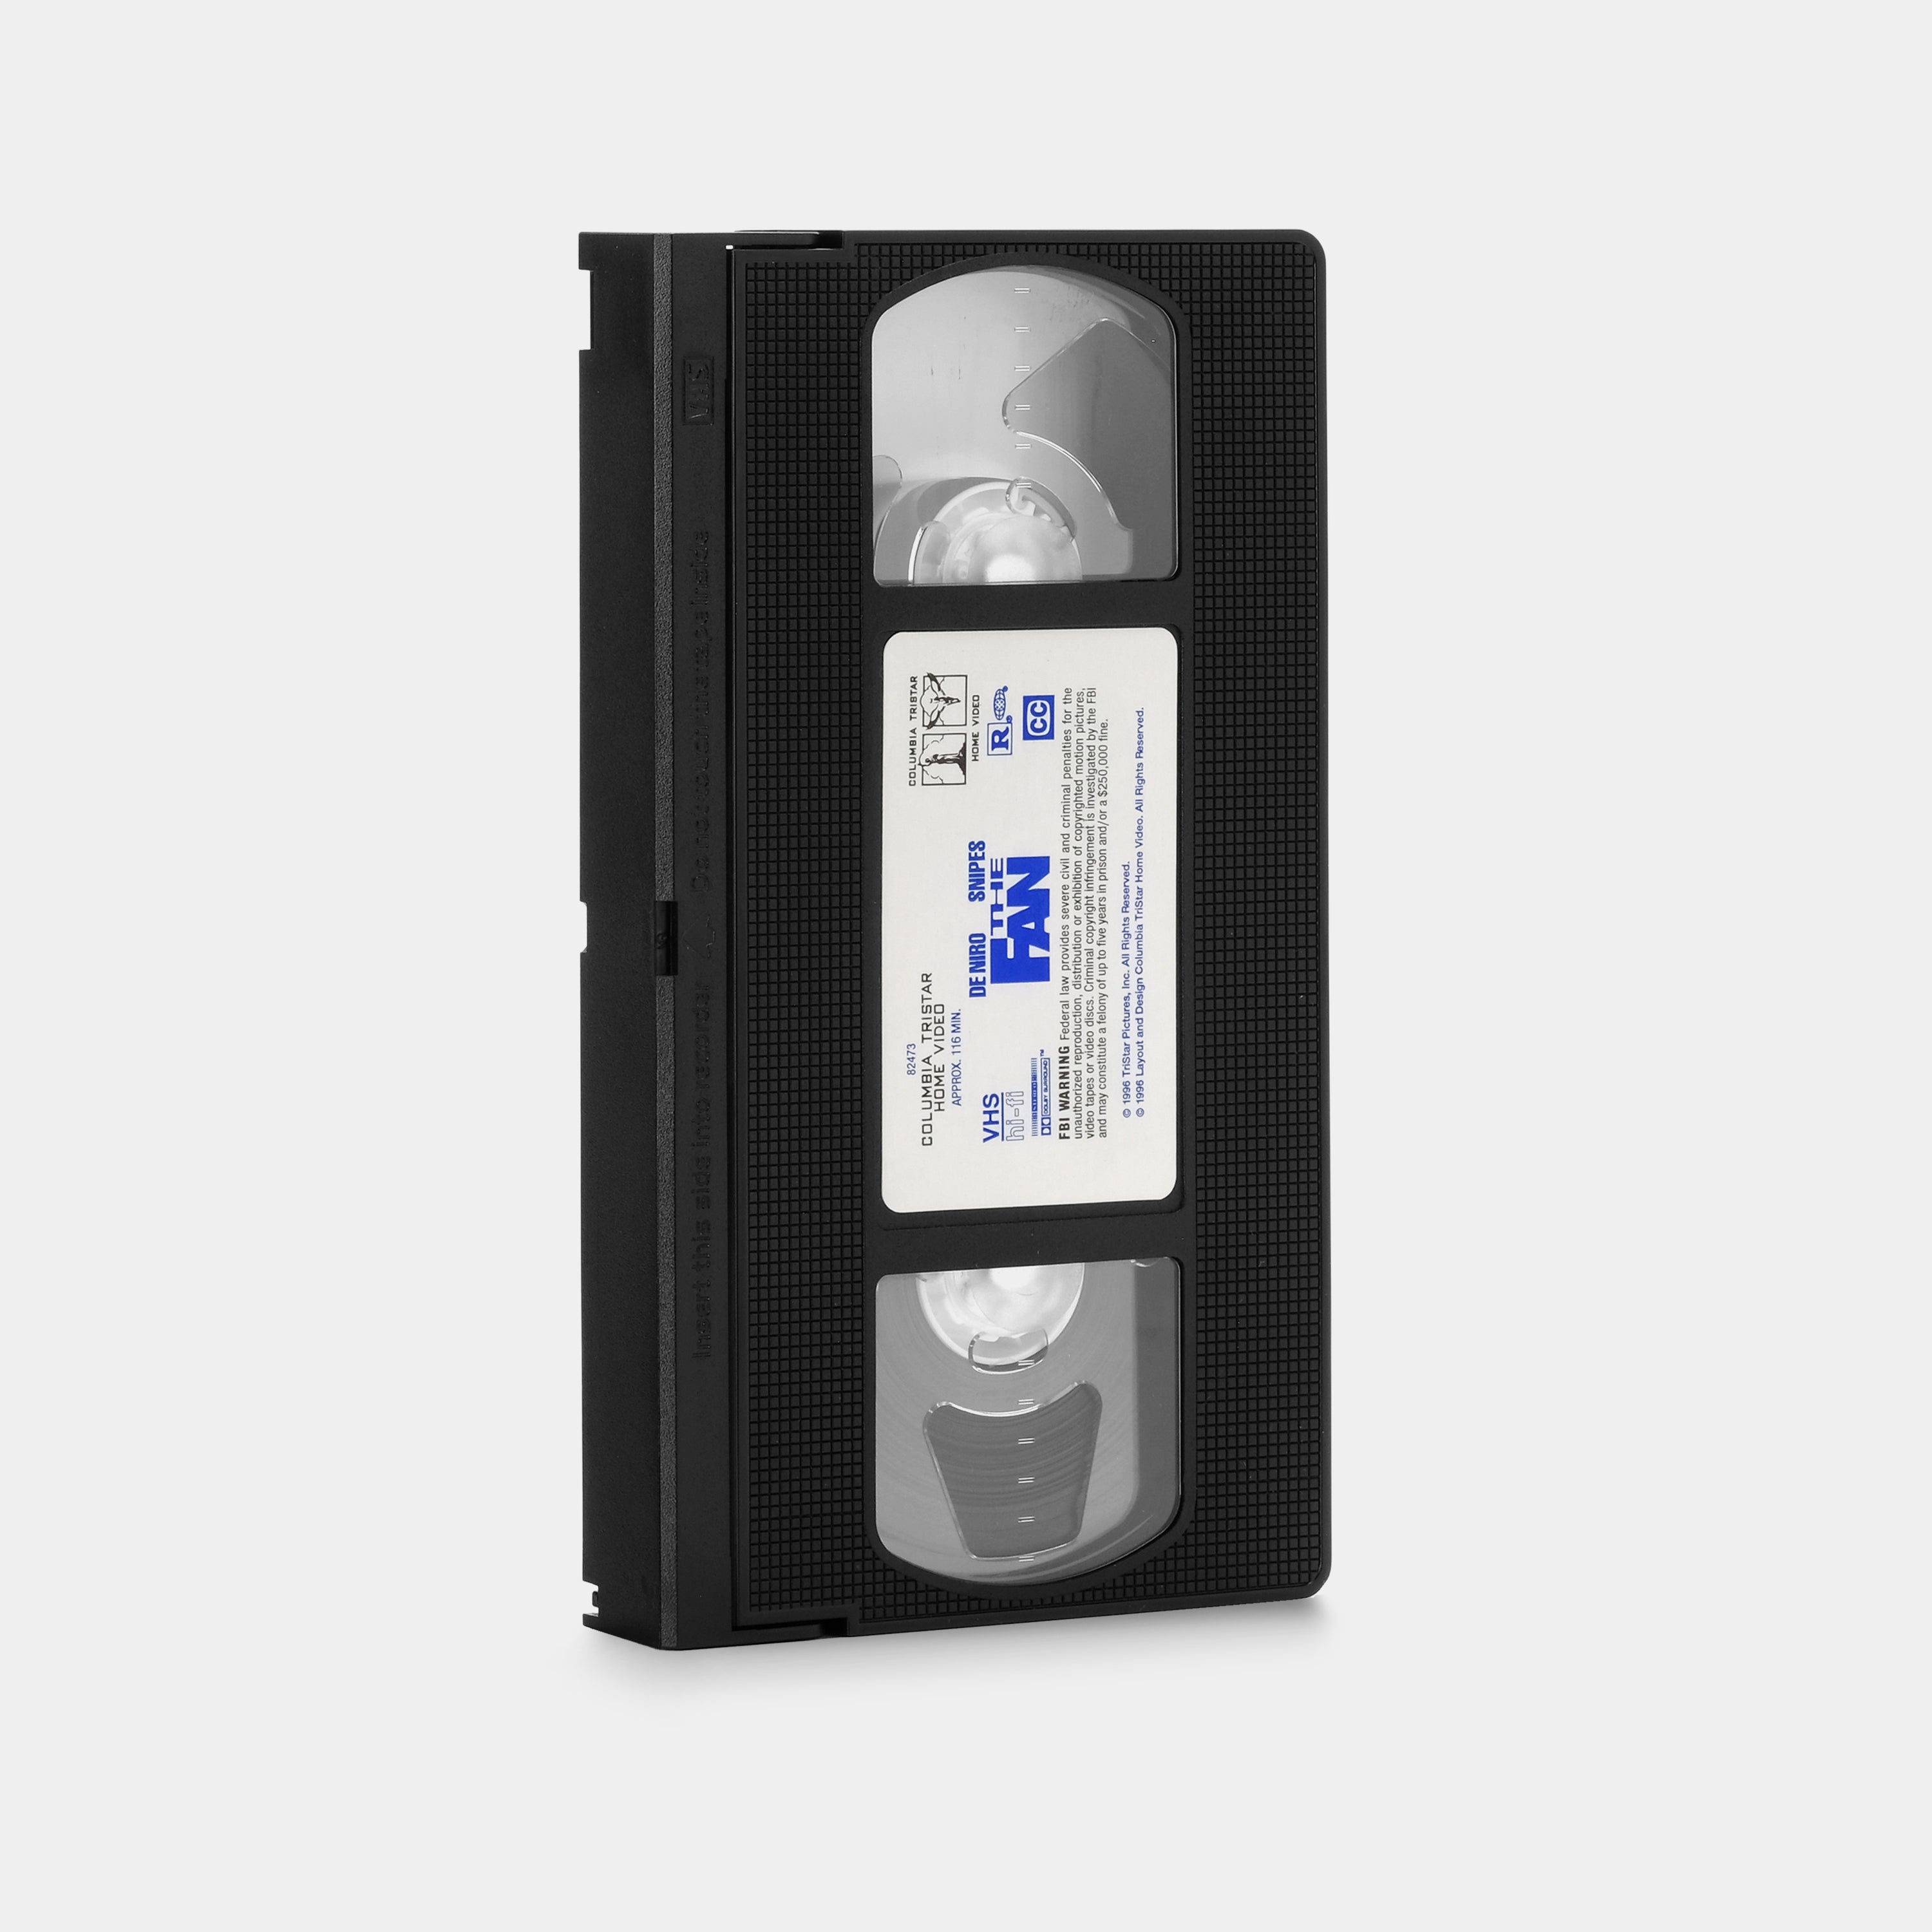 The Fan VHS Tape